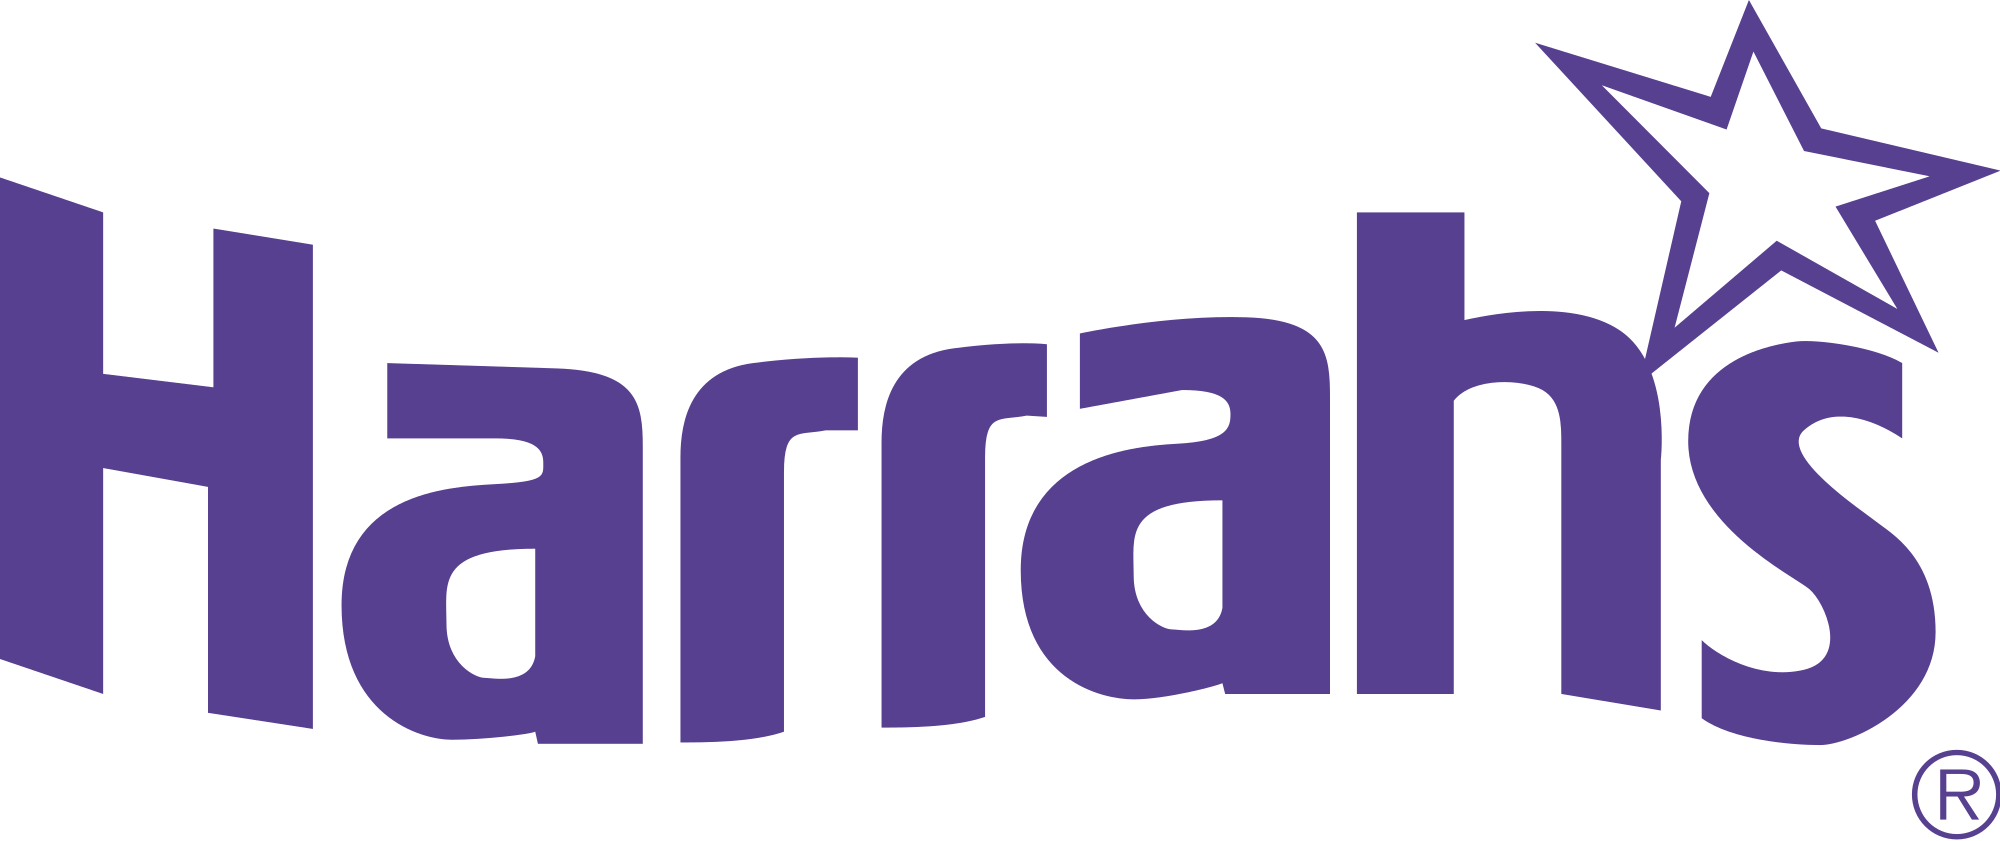 Harrahs Casino Logo - Harrah's logo.svg